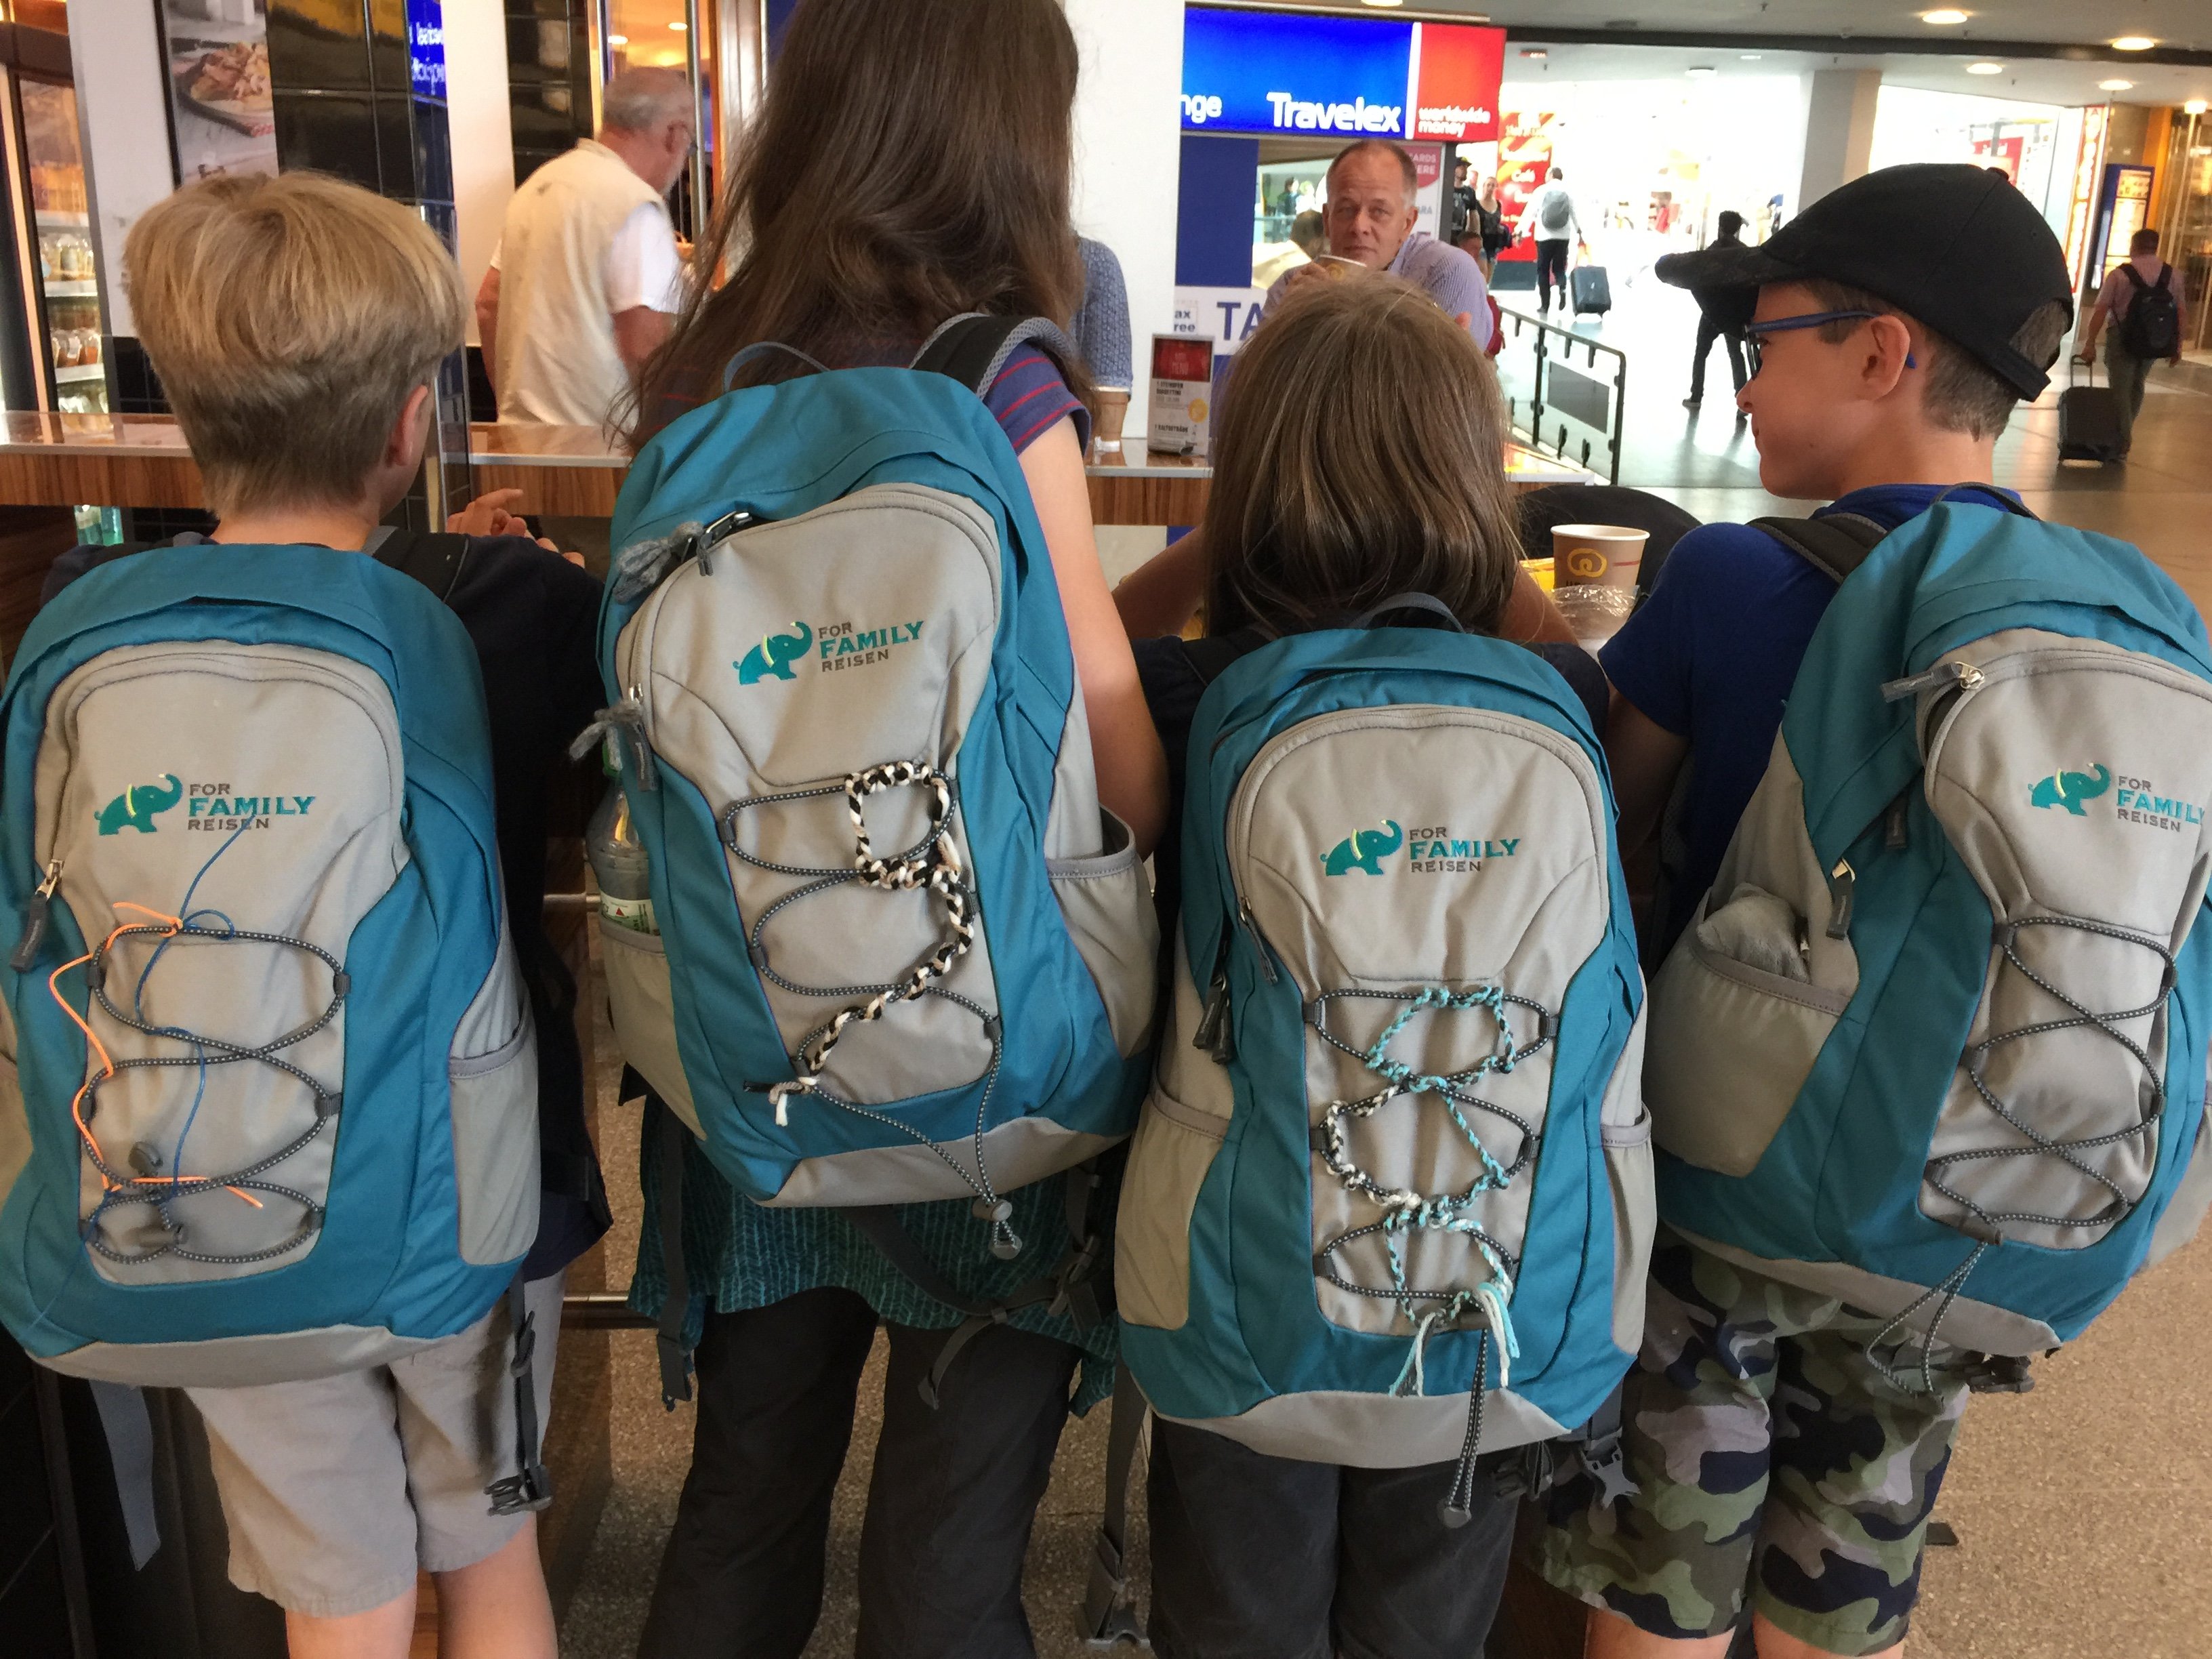 Reisespiele für Kinder - Beschäftigungsideen für Kinder im Auto und Flugzeug - Familien mit FFR Rucksack am Flughafen